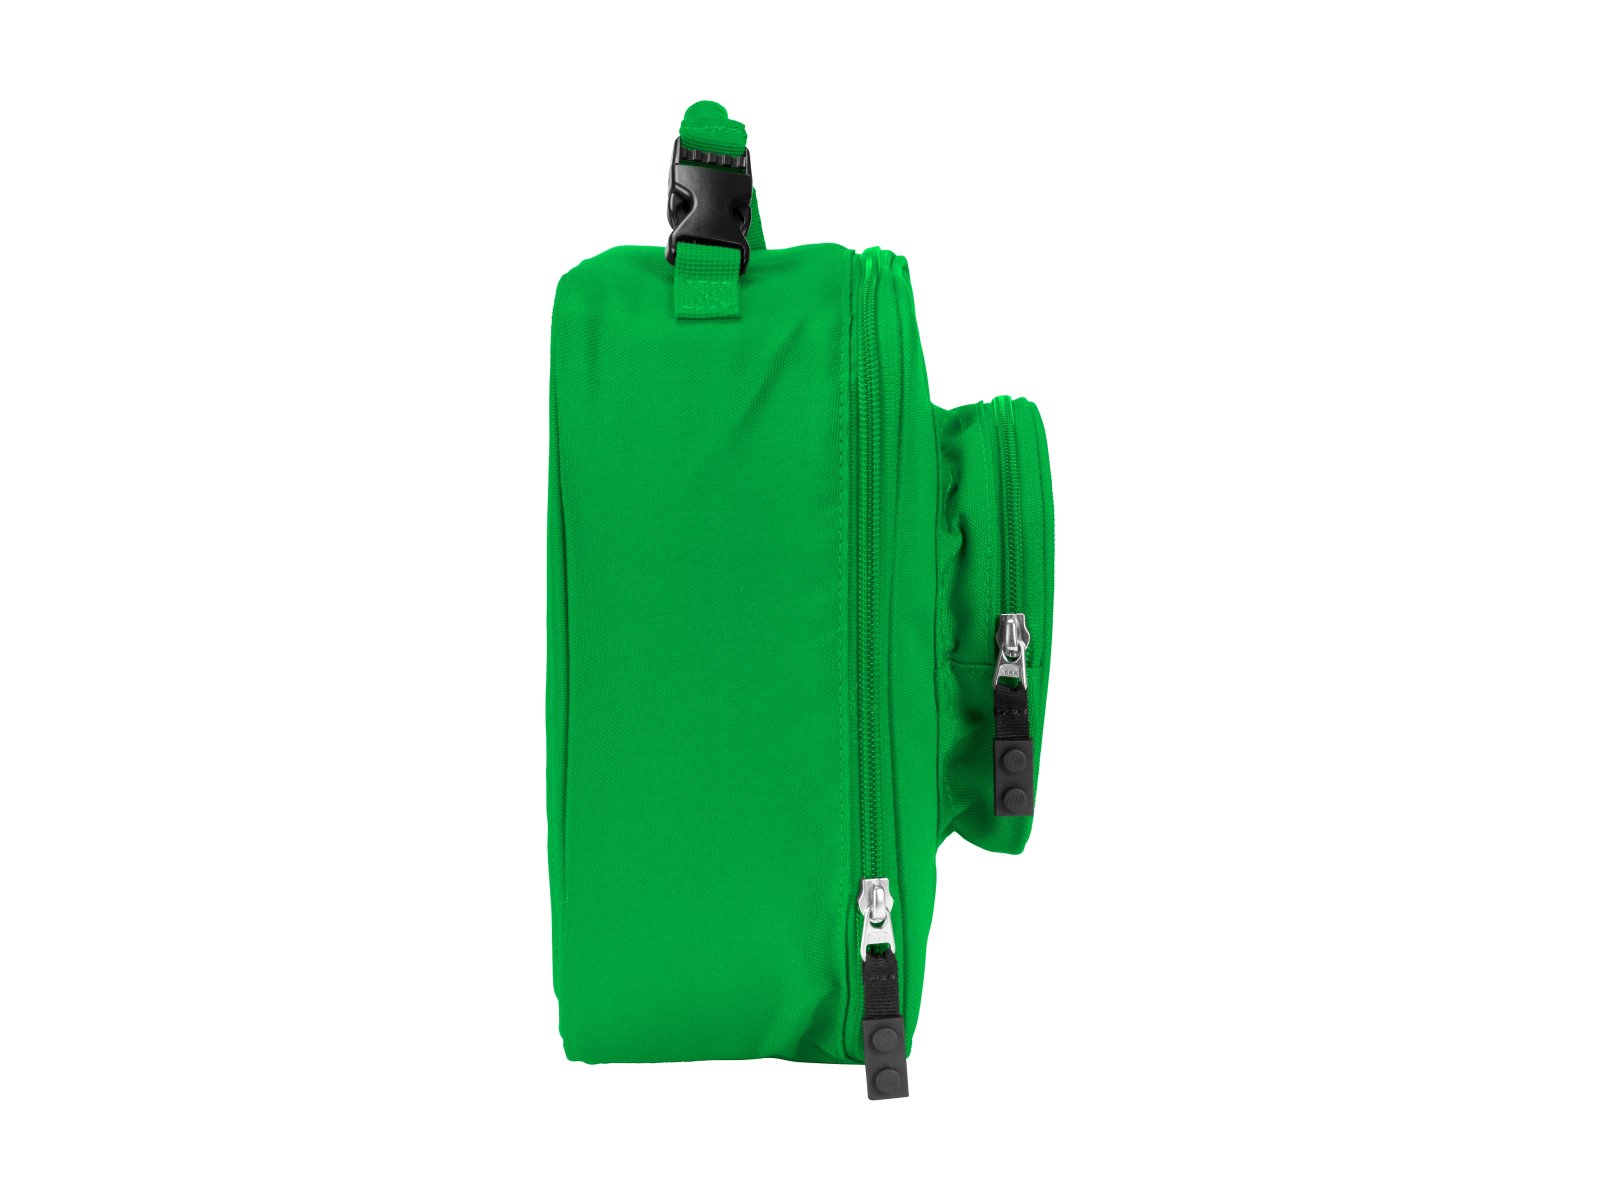 LEGO 5005519 Zielona torebka śniadaniowa w stylu klocka LEGO®